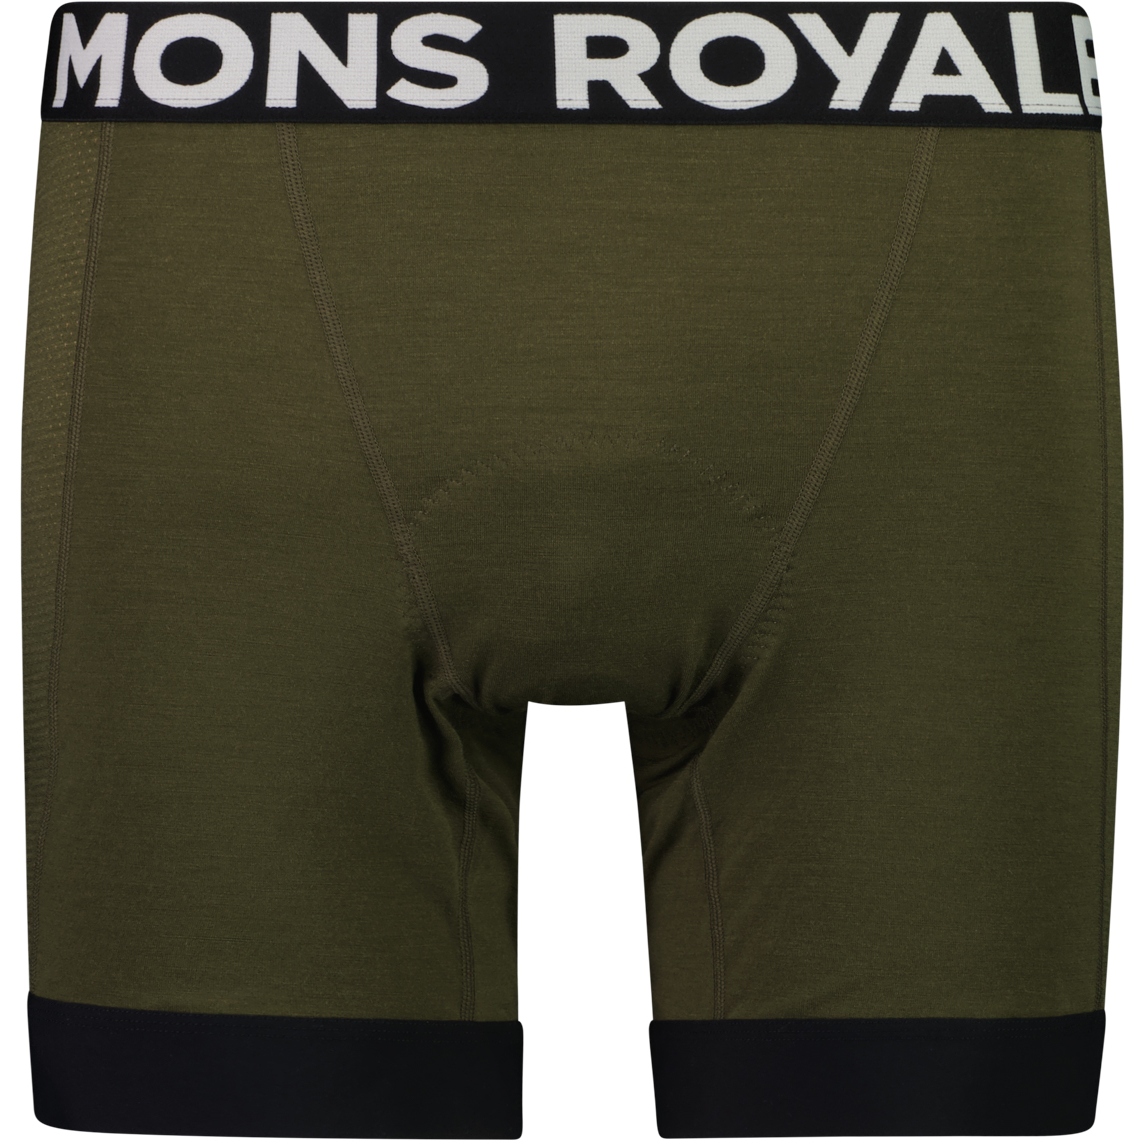 Produktbild von Mons Royale Epic Merino Shift MTB Unterhose Herren - dark olive